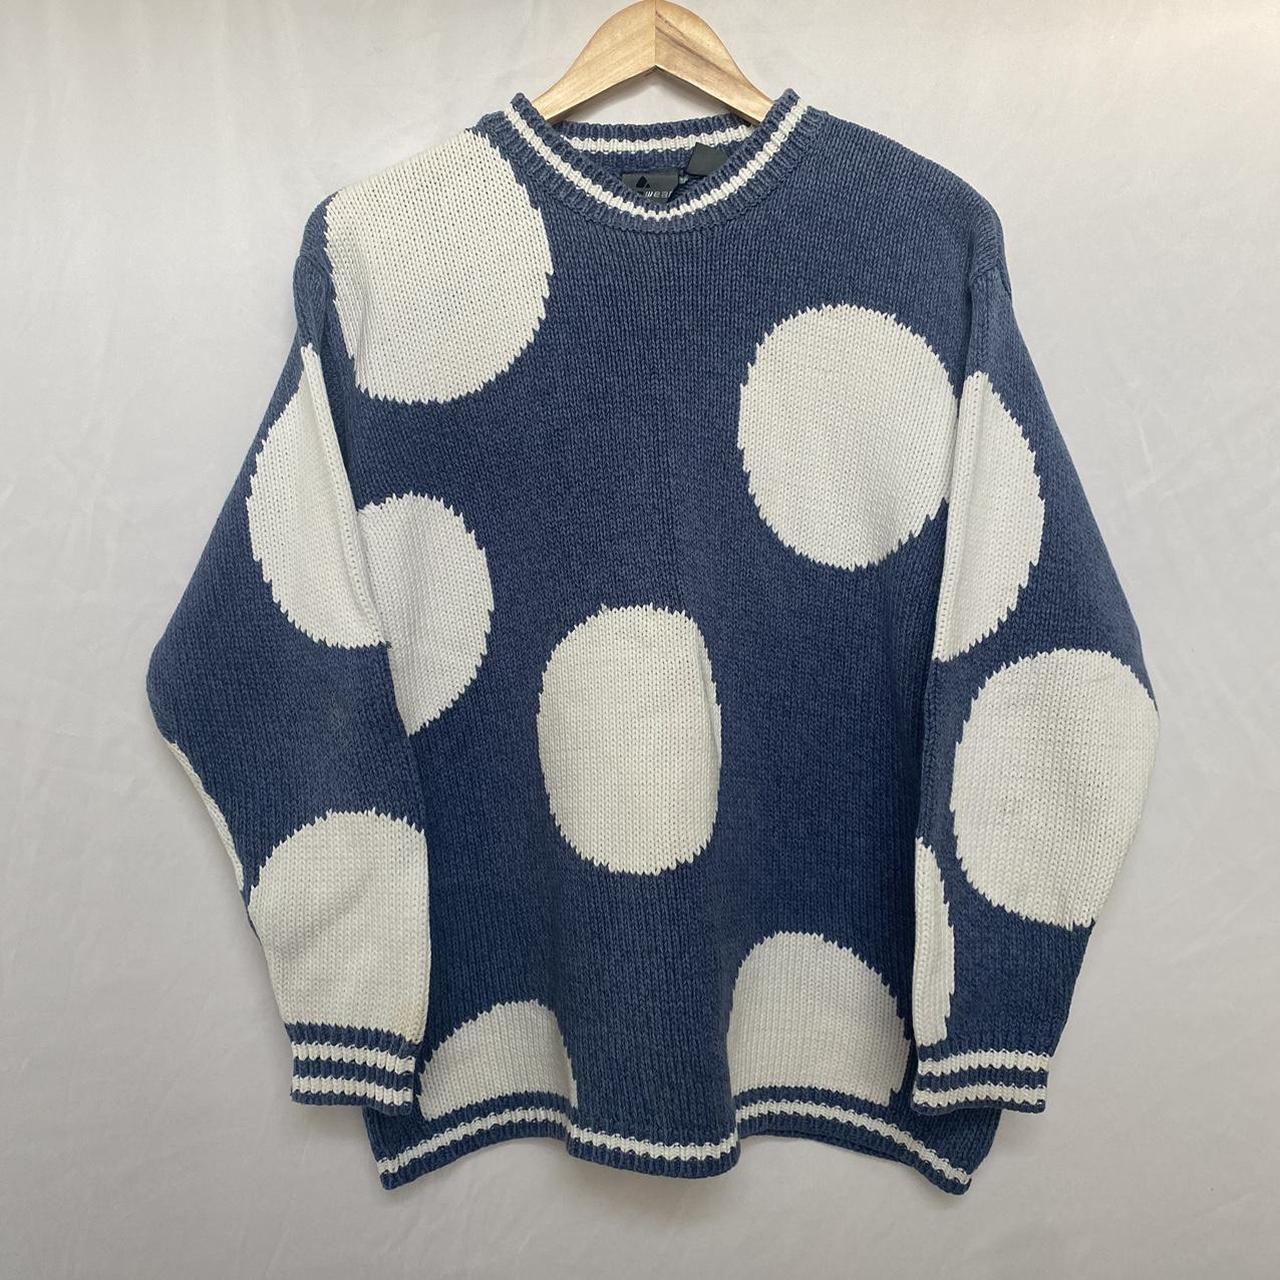 1980s LizWear Sweater • size women’s M • excellent... - Depop